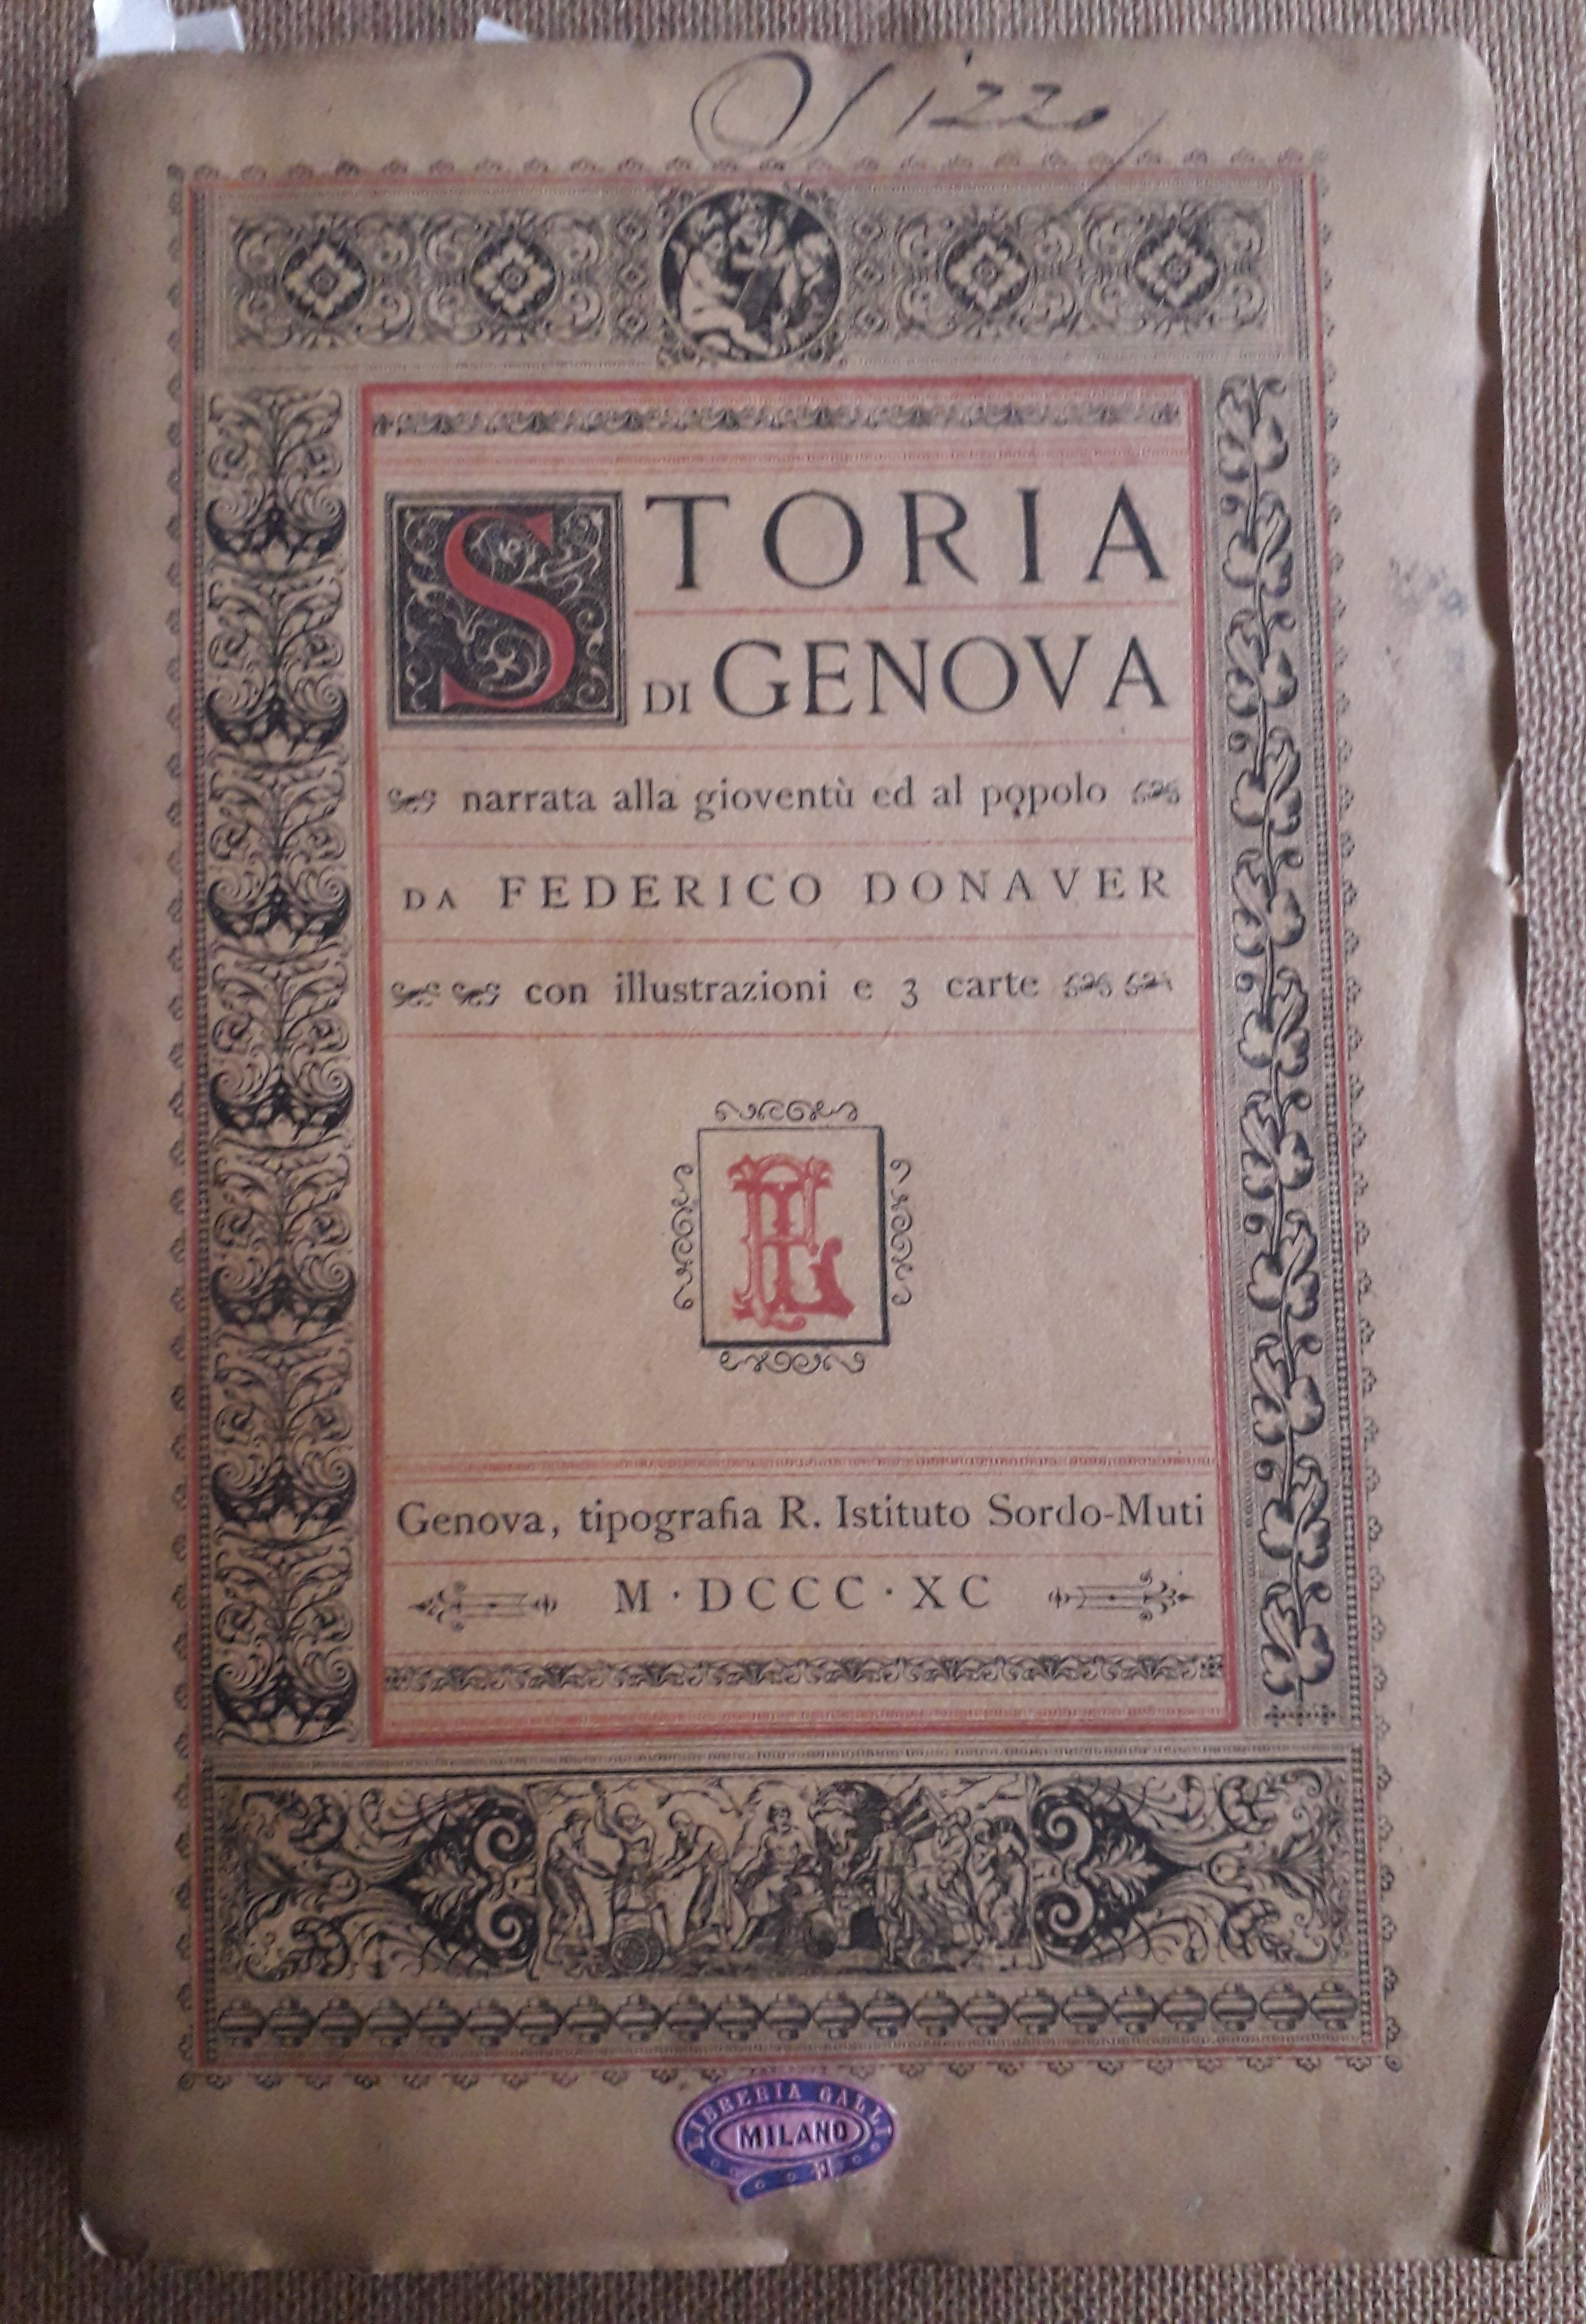 Storia di Genova narrata alla gioventù ed al popolo